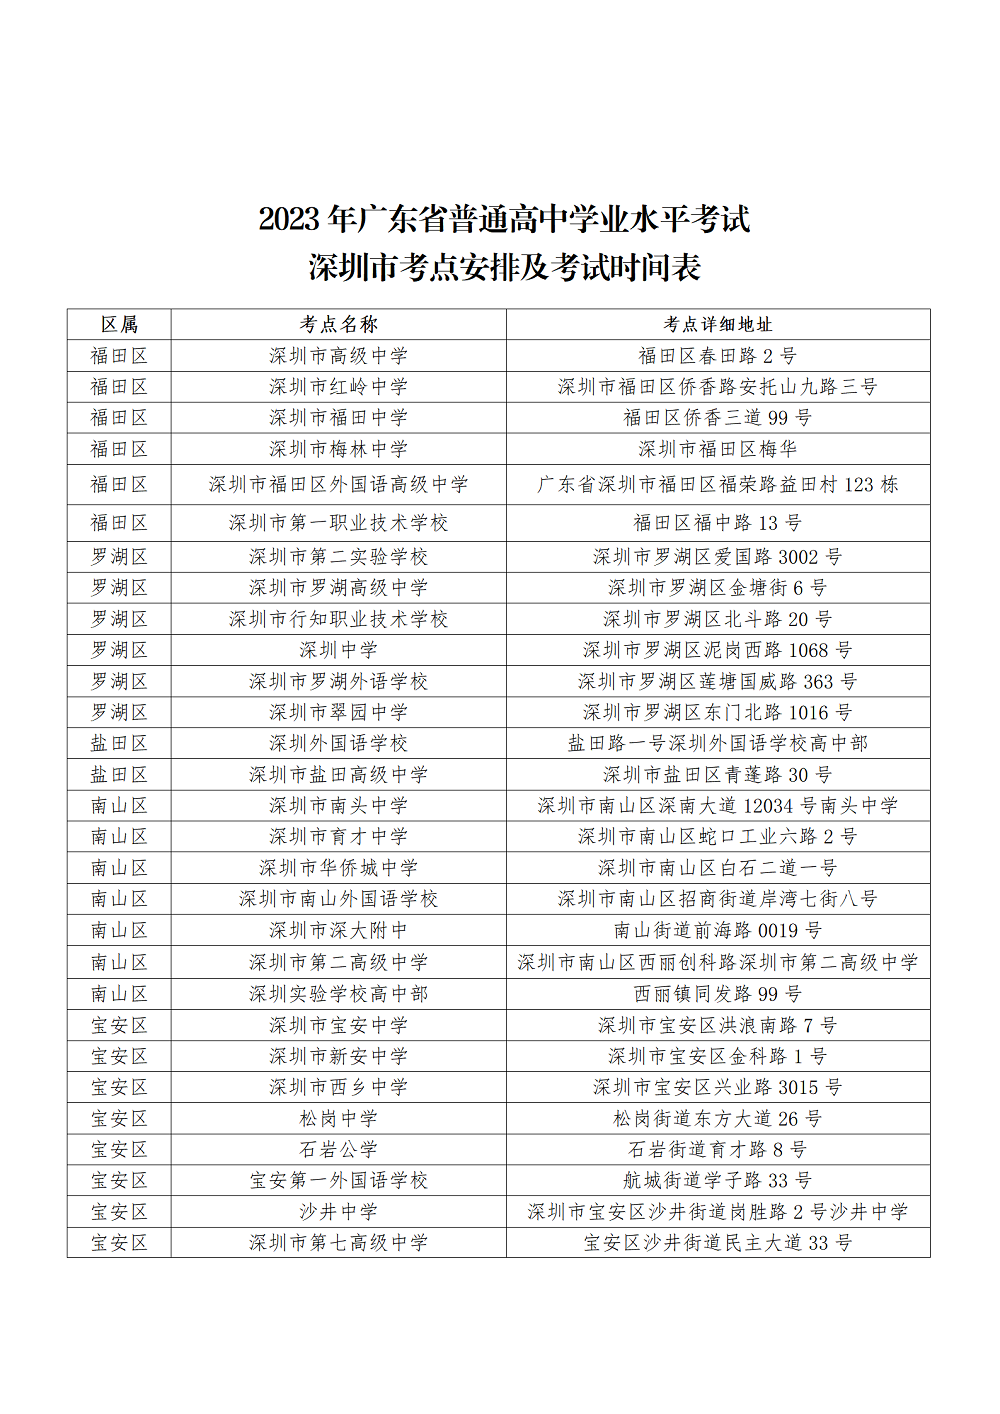 （通稿）2023年深圳市春季高考于2月22日-26日举行_08.png